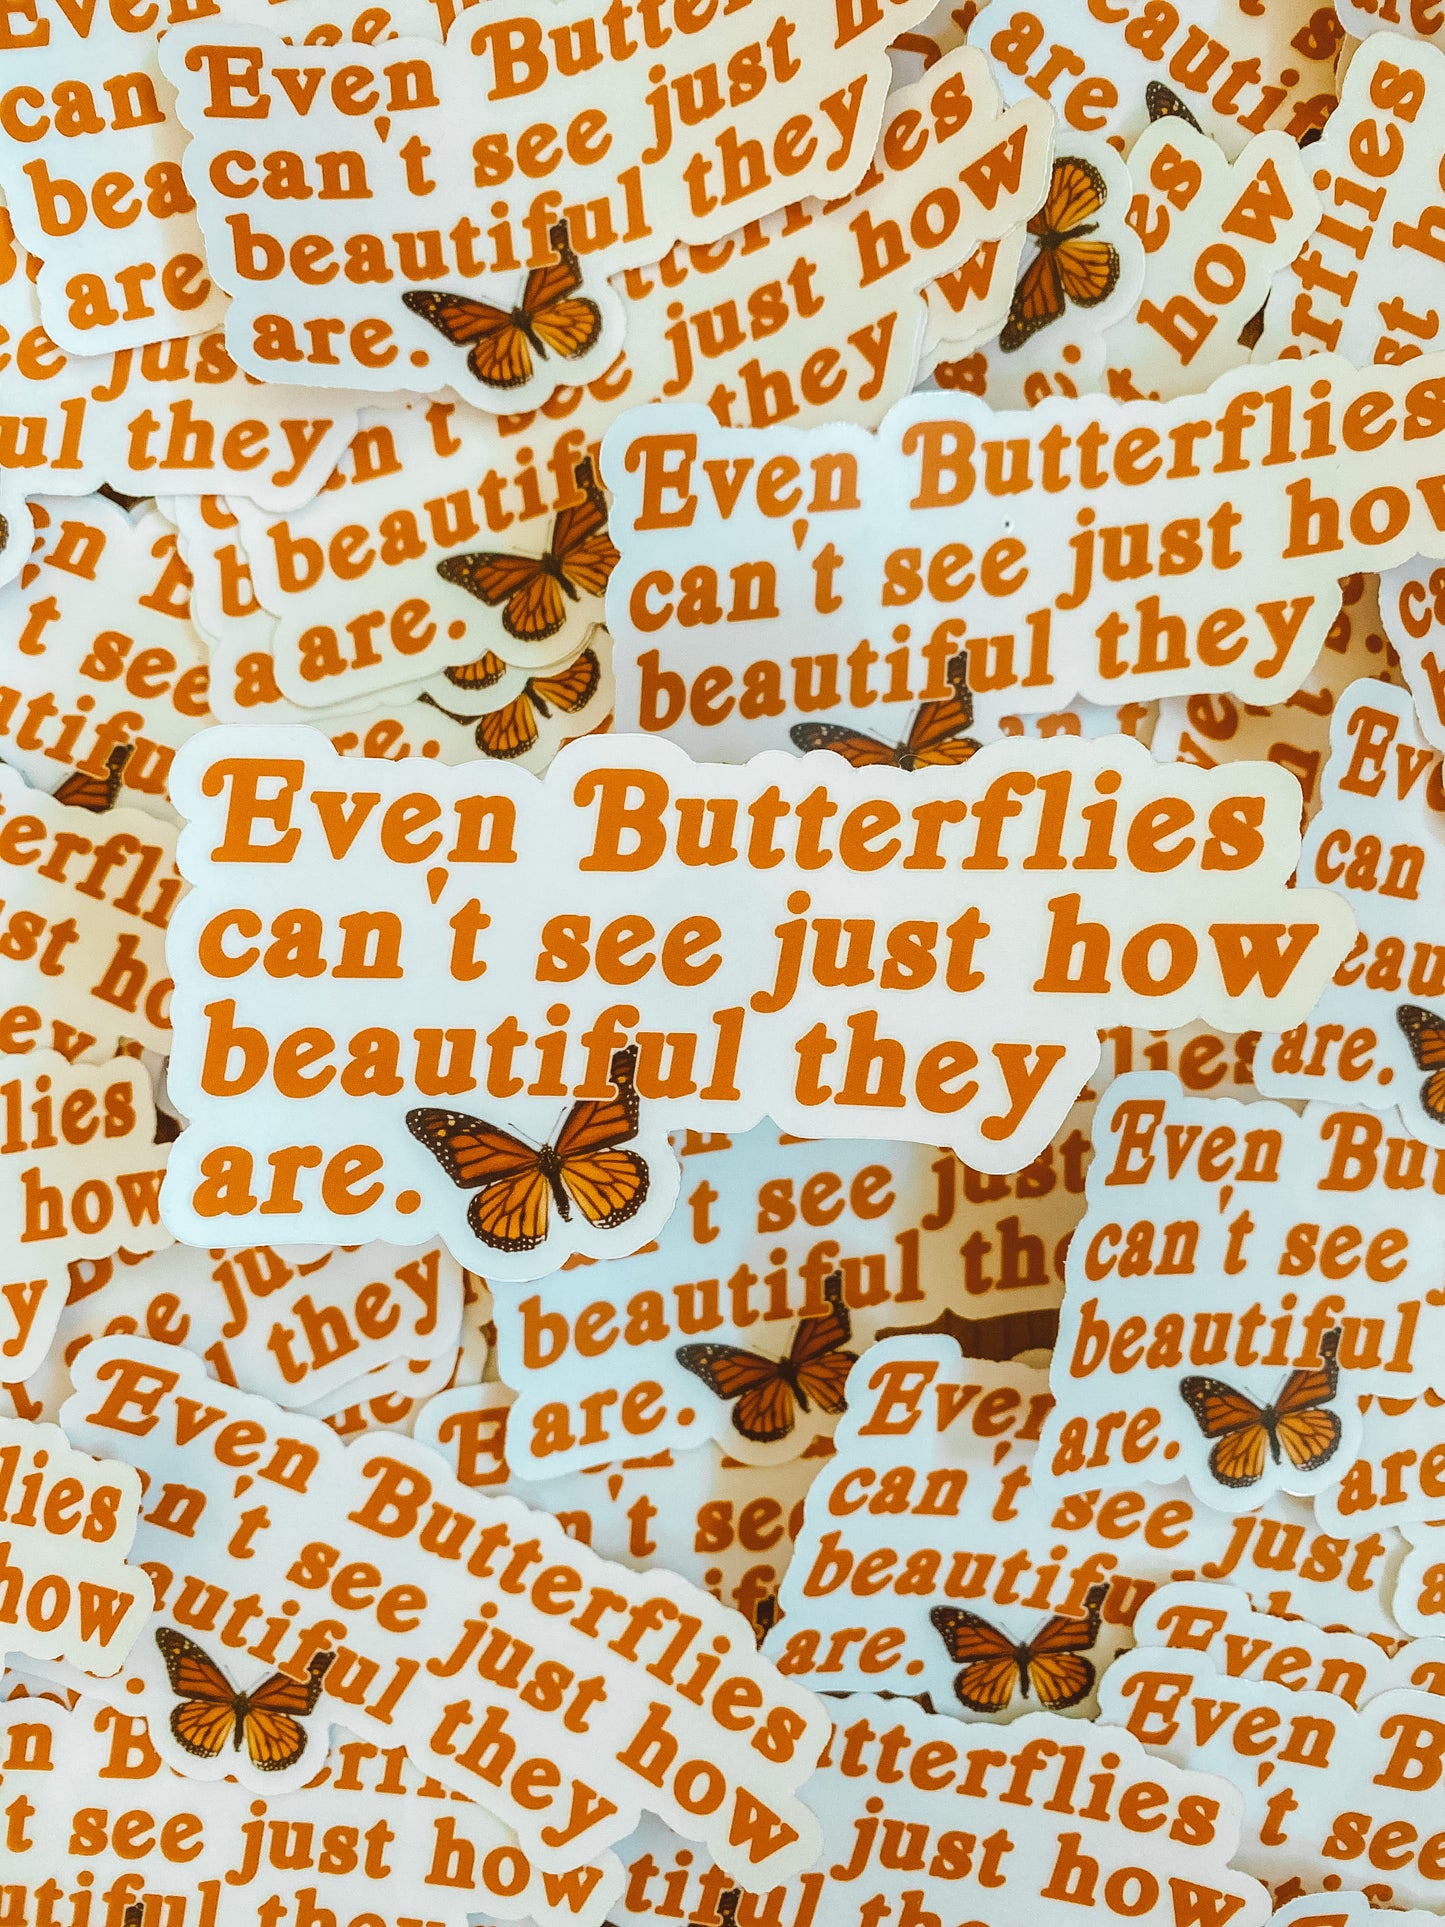 You’re beautiful sticker